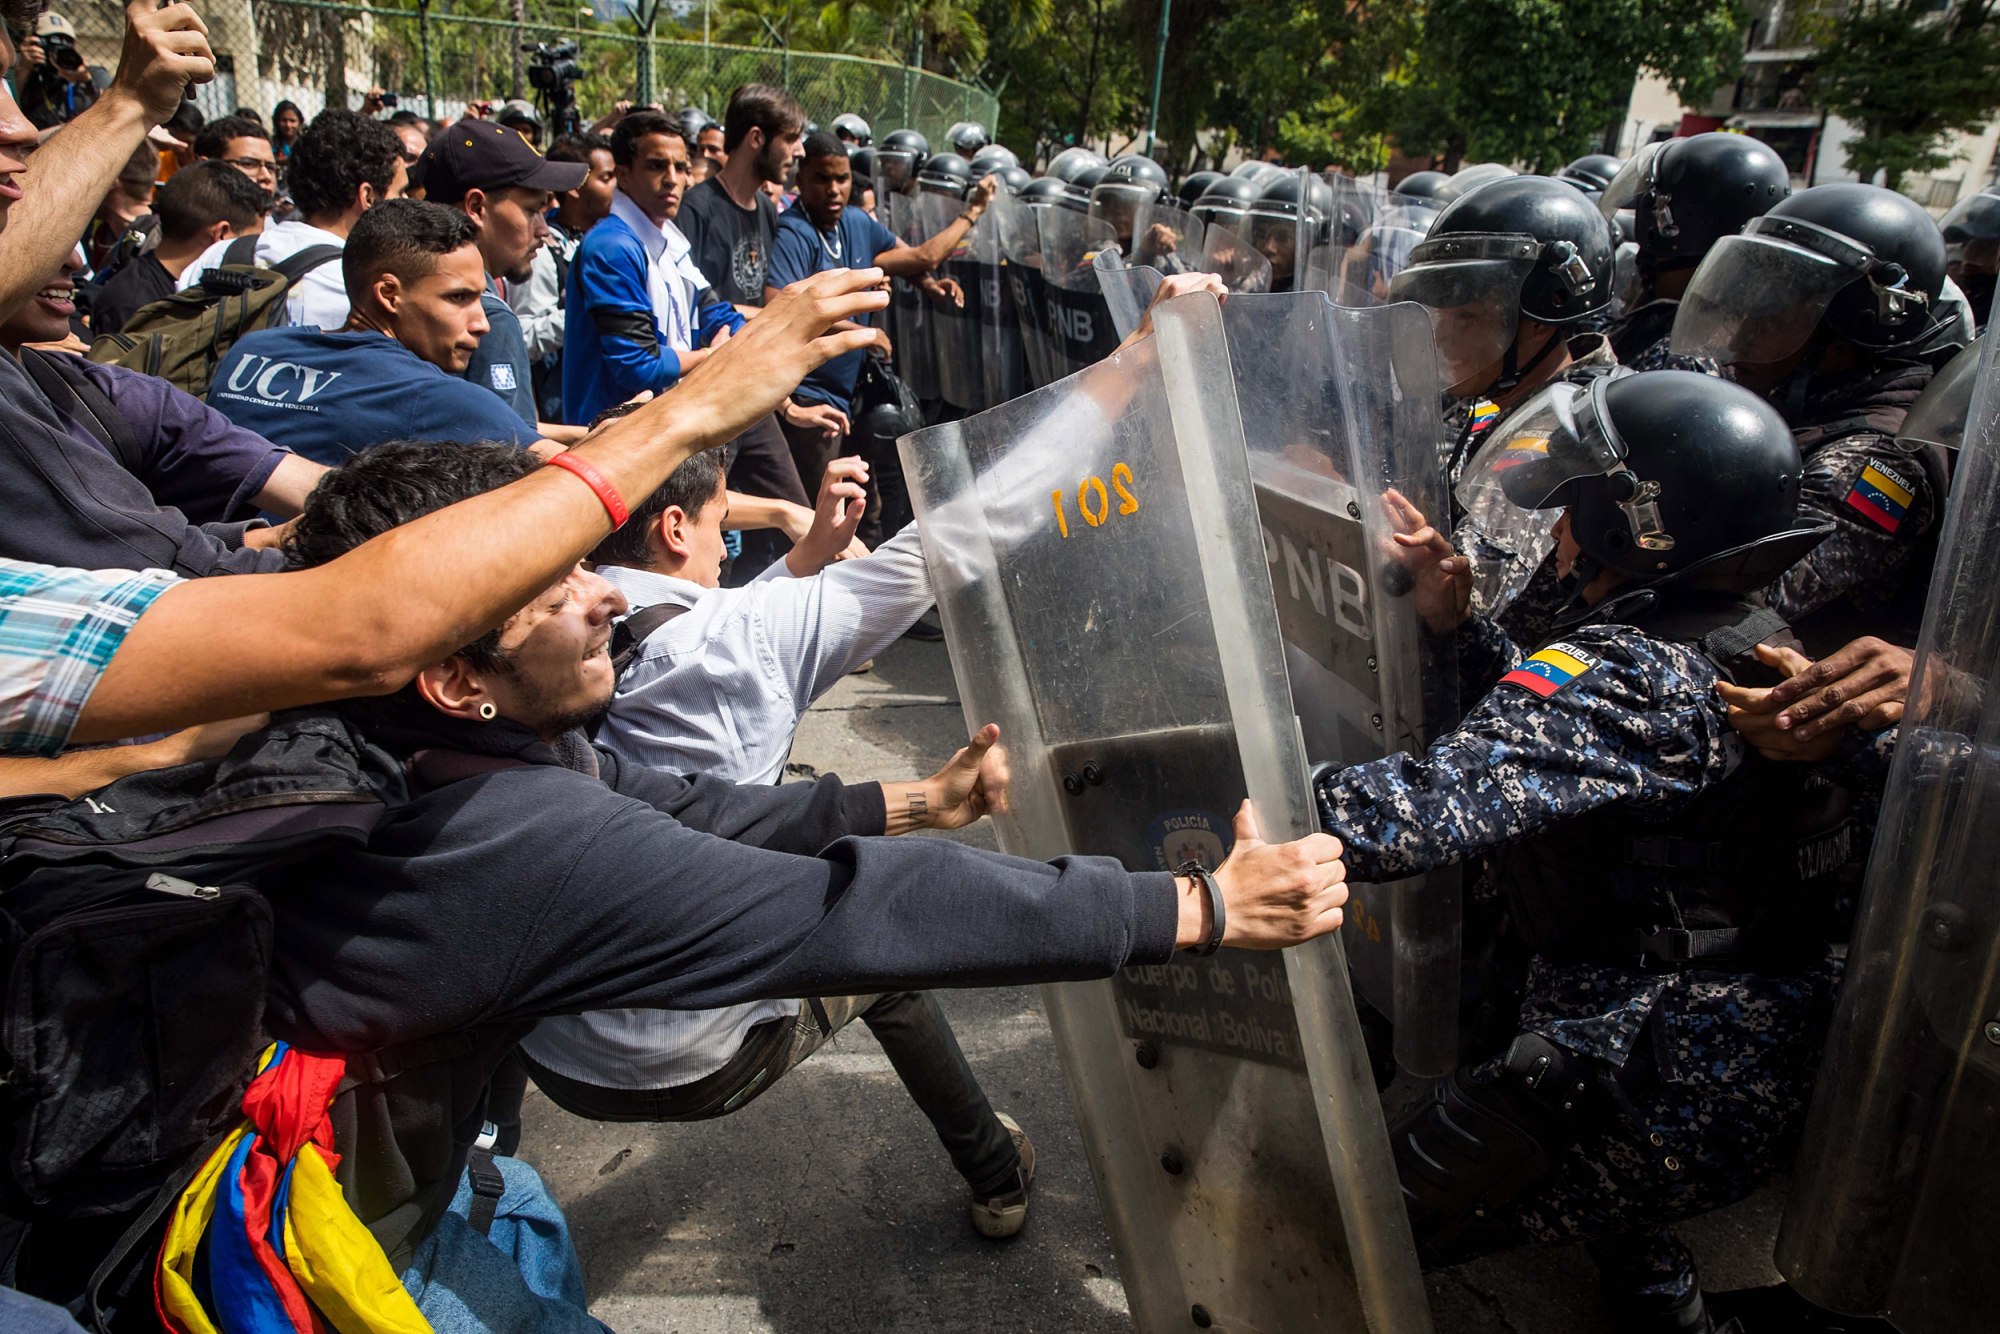 181121-protest-venezuela-ew-426p_01a171a4816f2abc042b9b3014a4fbd8.fit-2000w.jpg